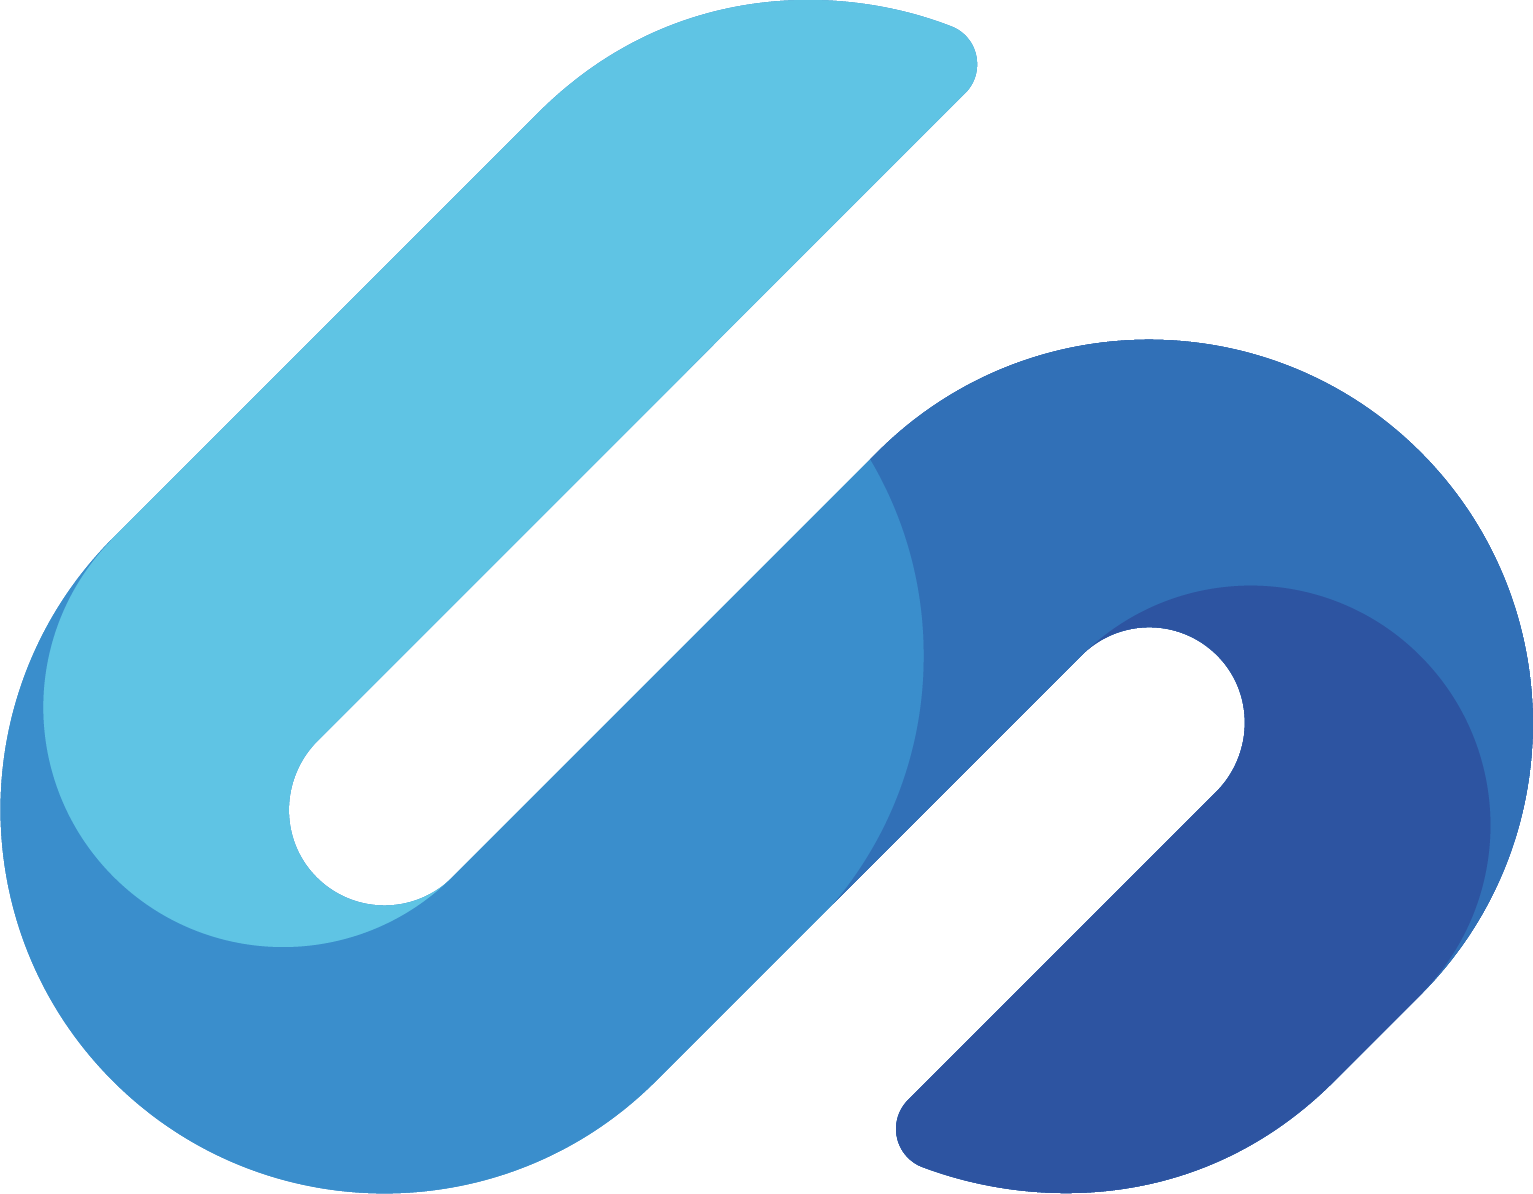 Shayp logo